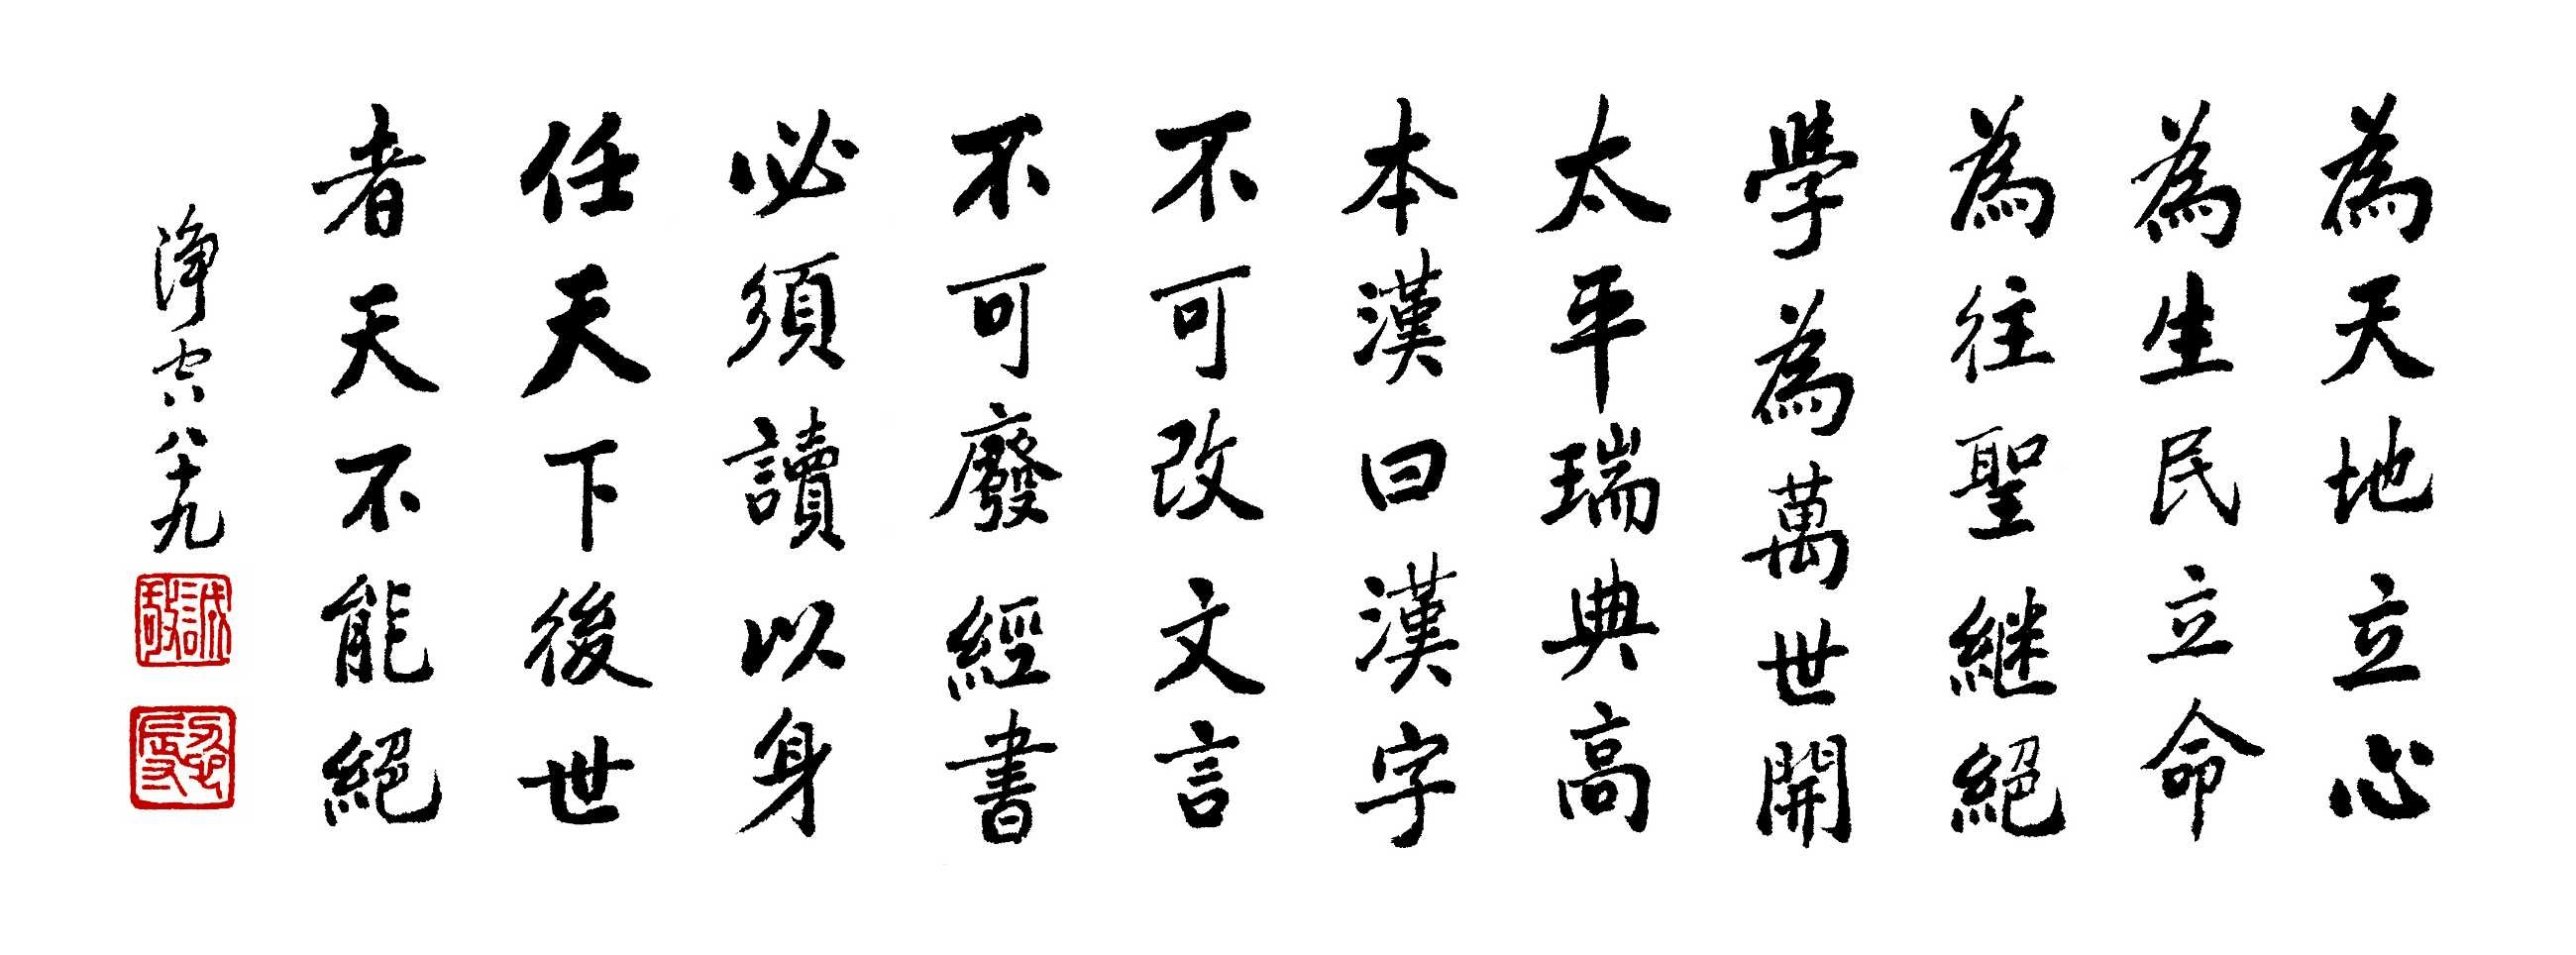 汉字不可改，文言不可废，经书必须读 MB-04-0580.jpg